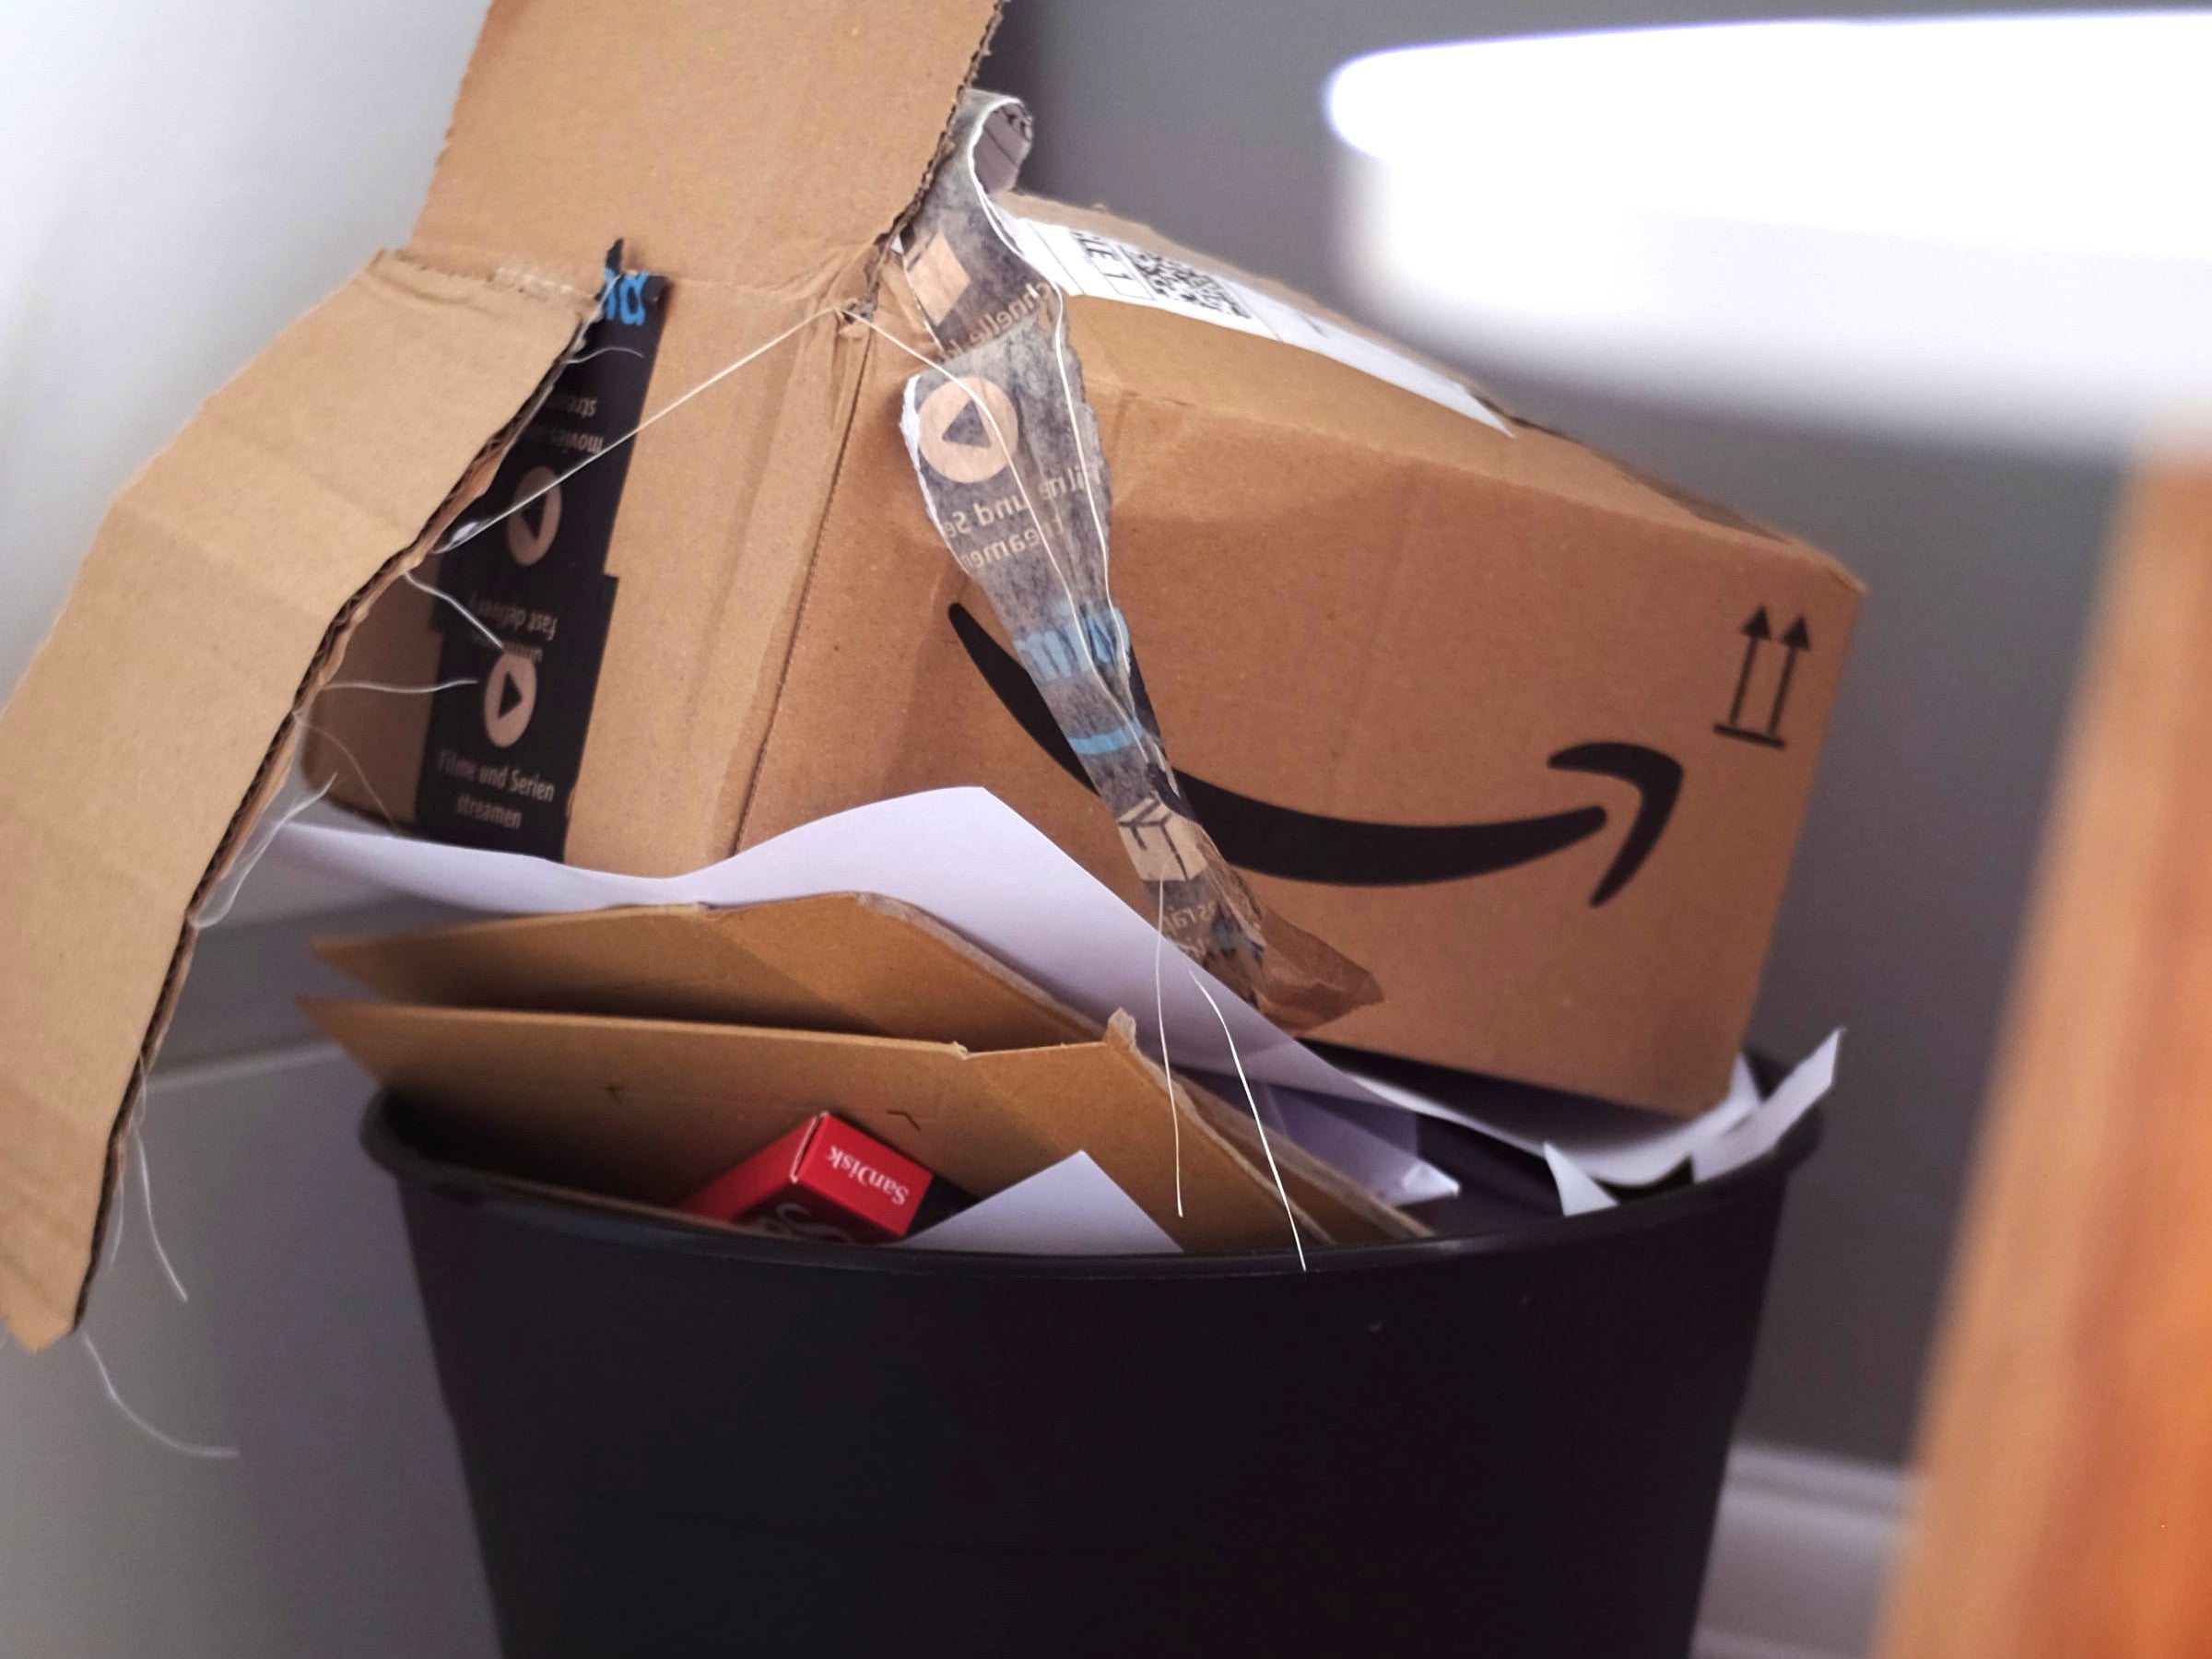 #Amazon vor dem Aus: Gründer Jeff Bezos spricht von Insolvenz